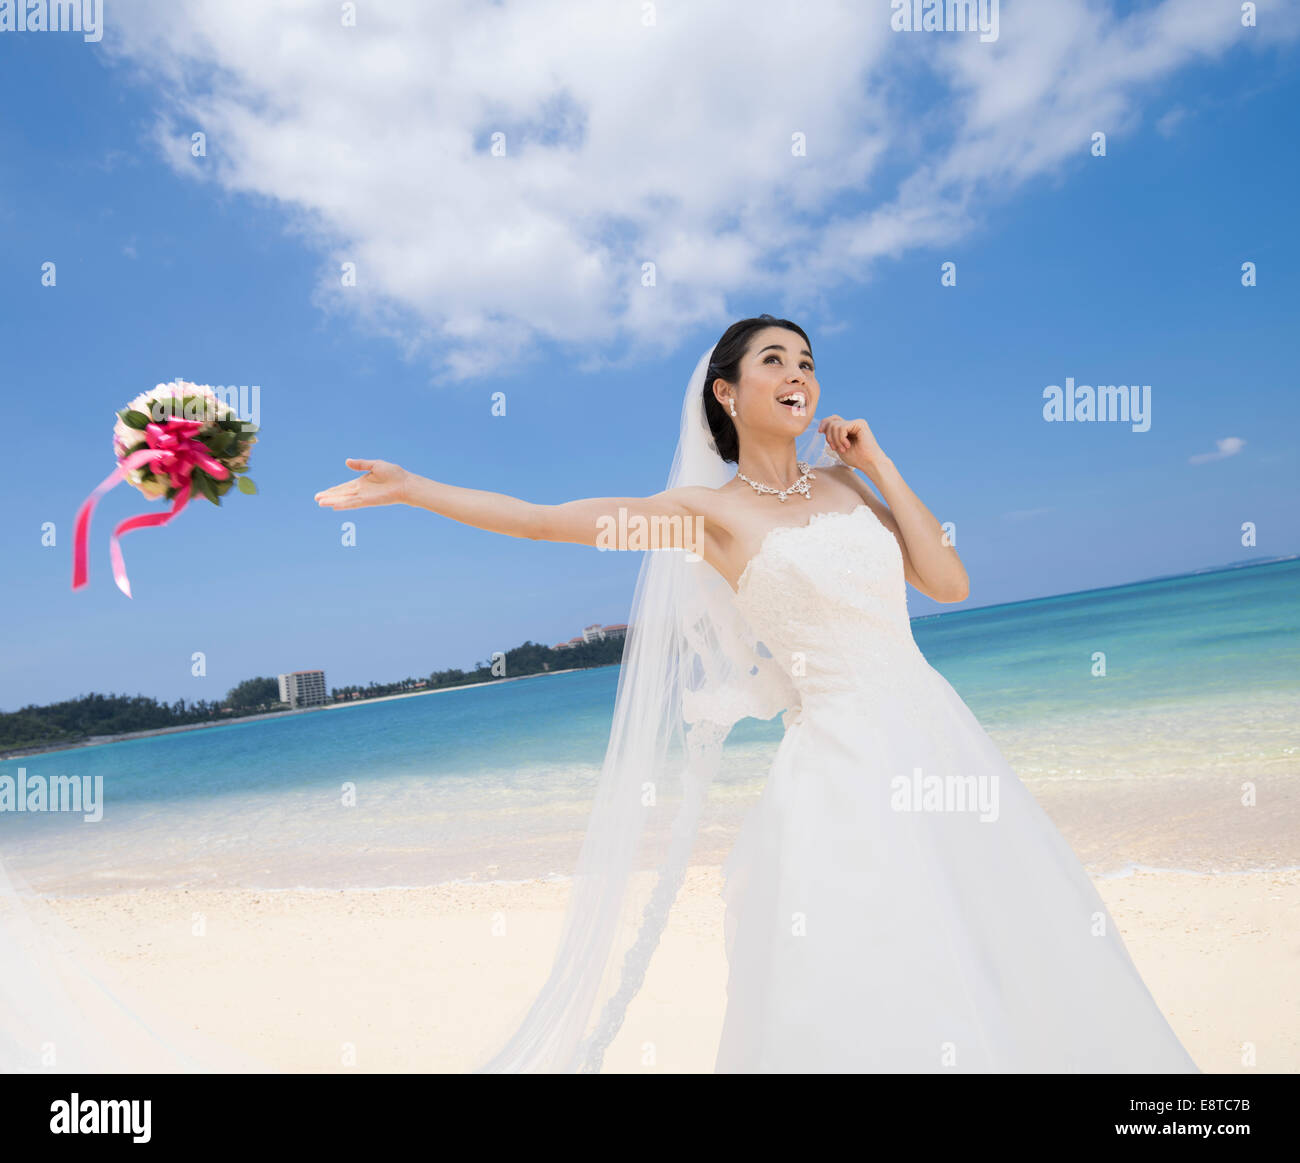 Mischlinge, asiatische / American Braut im weißen Hochzeitskleid werfen Blumenstrauß am Strandhochzeit in Okinawa, Japan Stockfoto